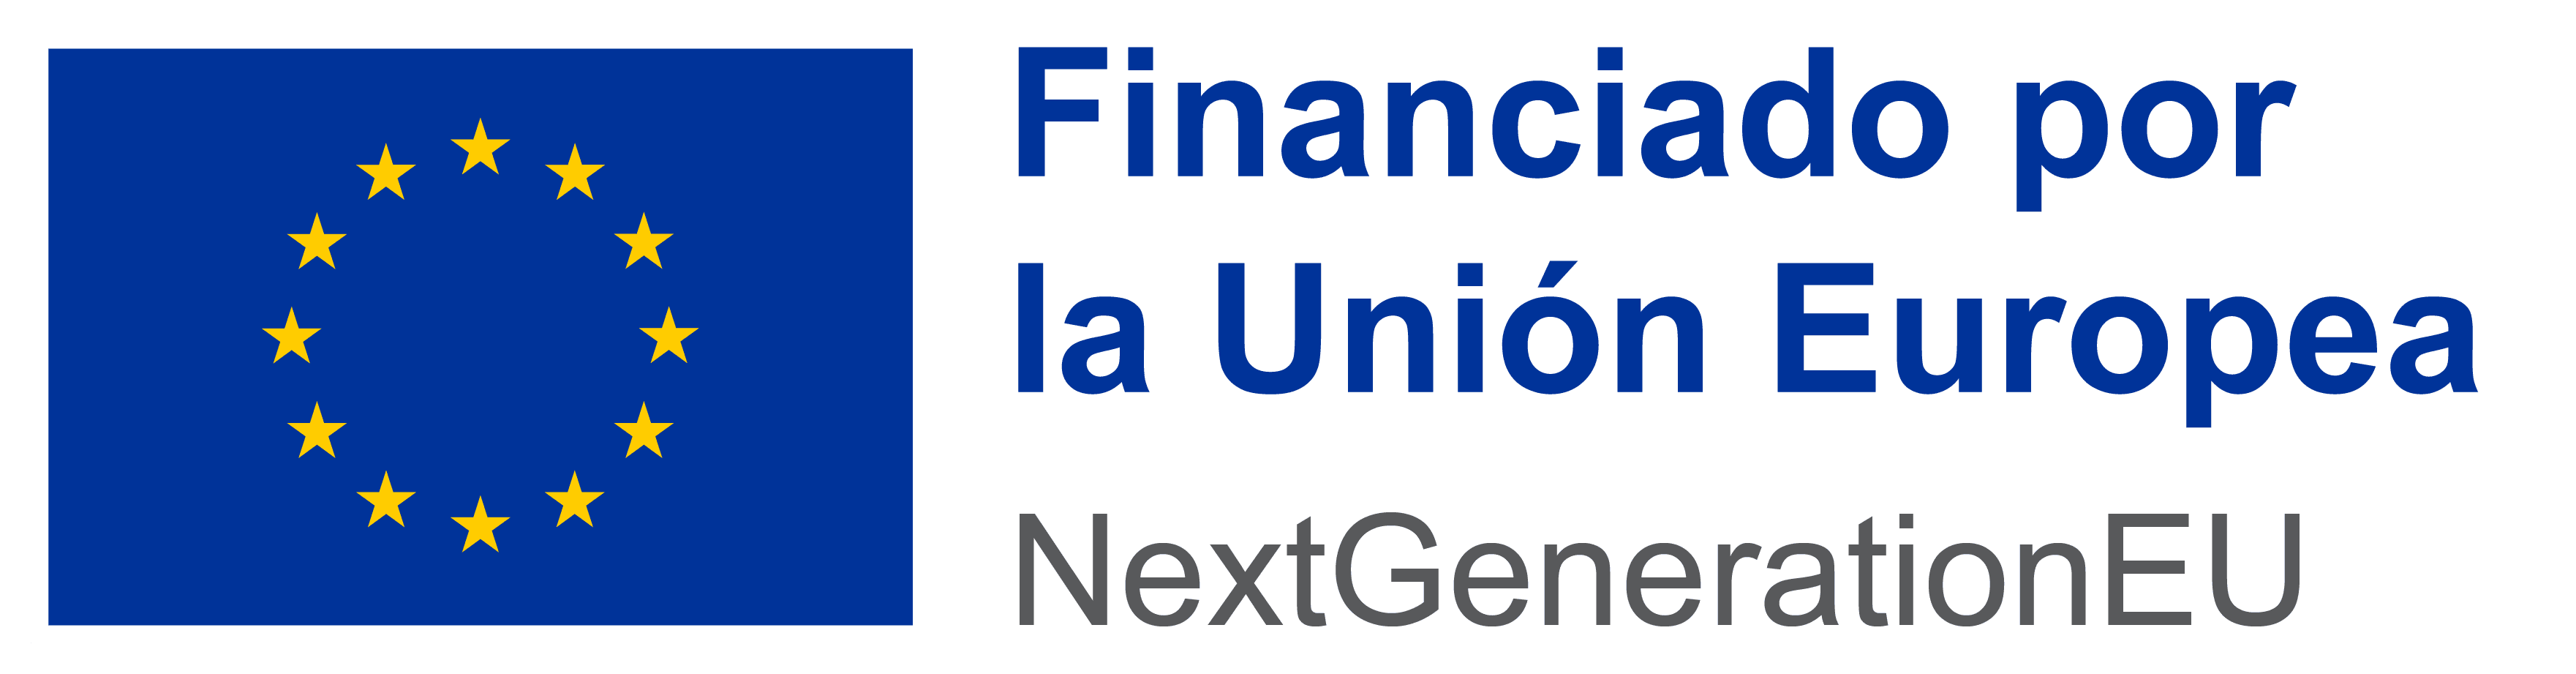 Financiado por la Unión Europea | NextGenerationEU